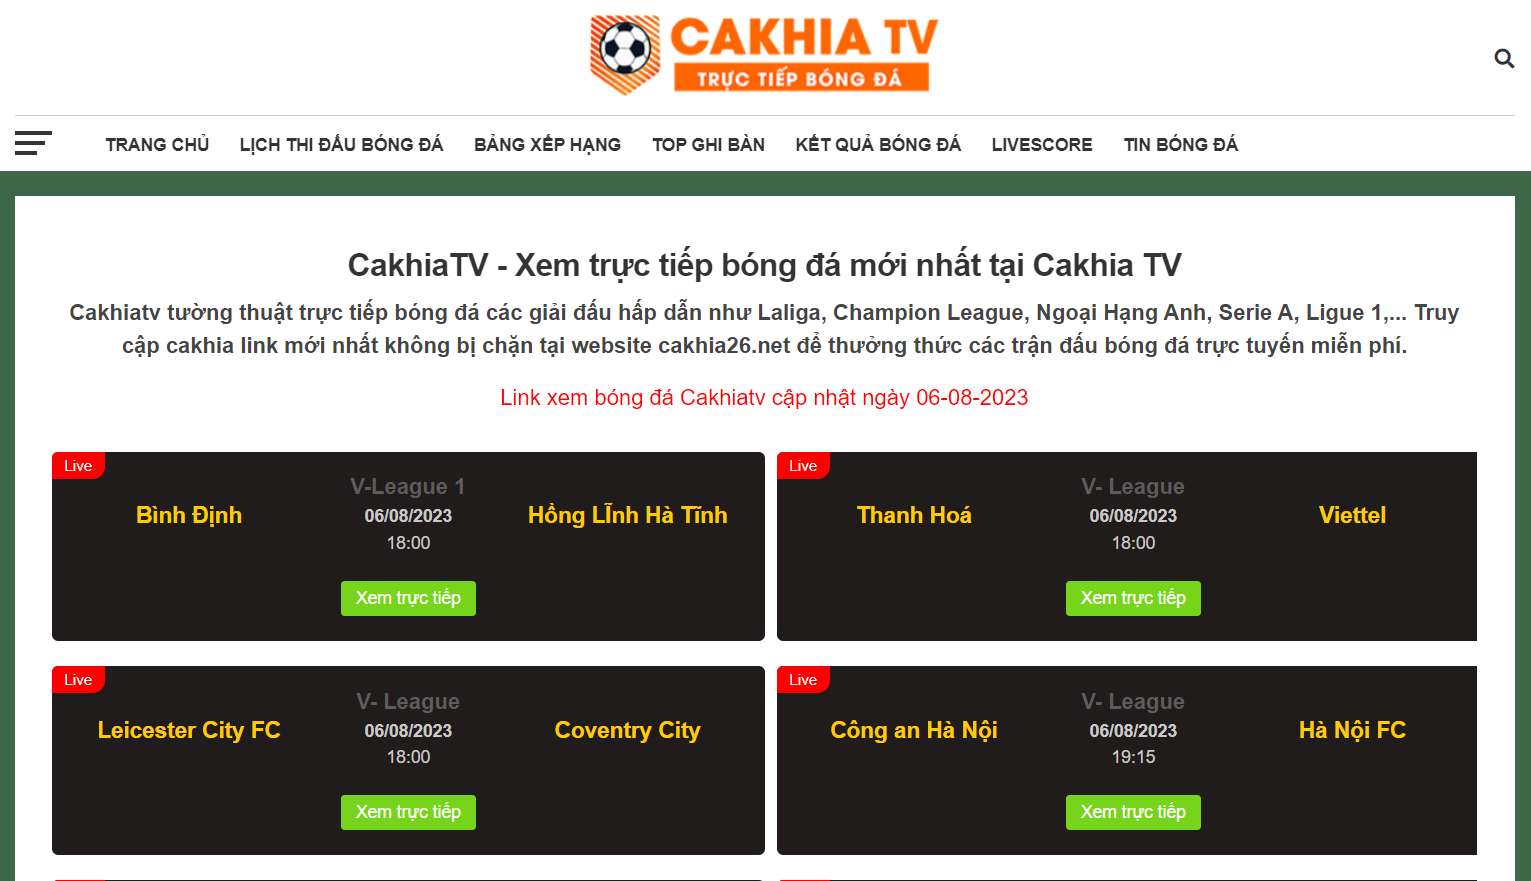 Trang chủ có giao diện đơn giản, dễ dùng của Cakhia